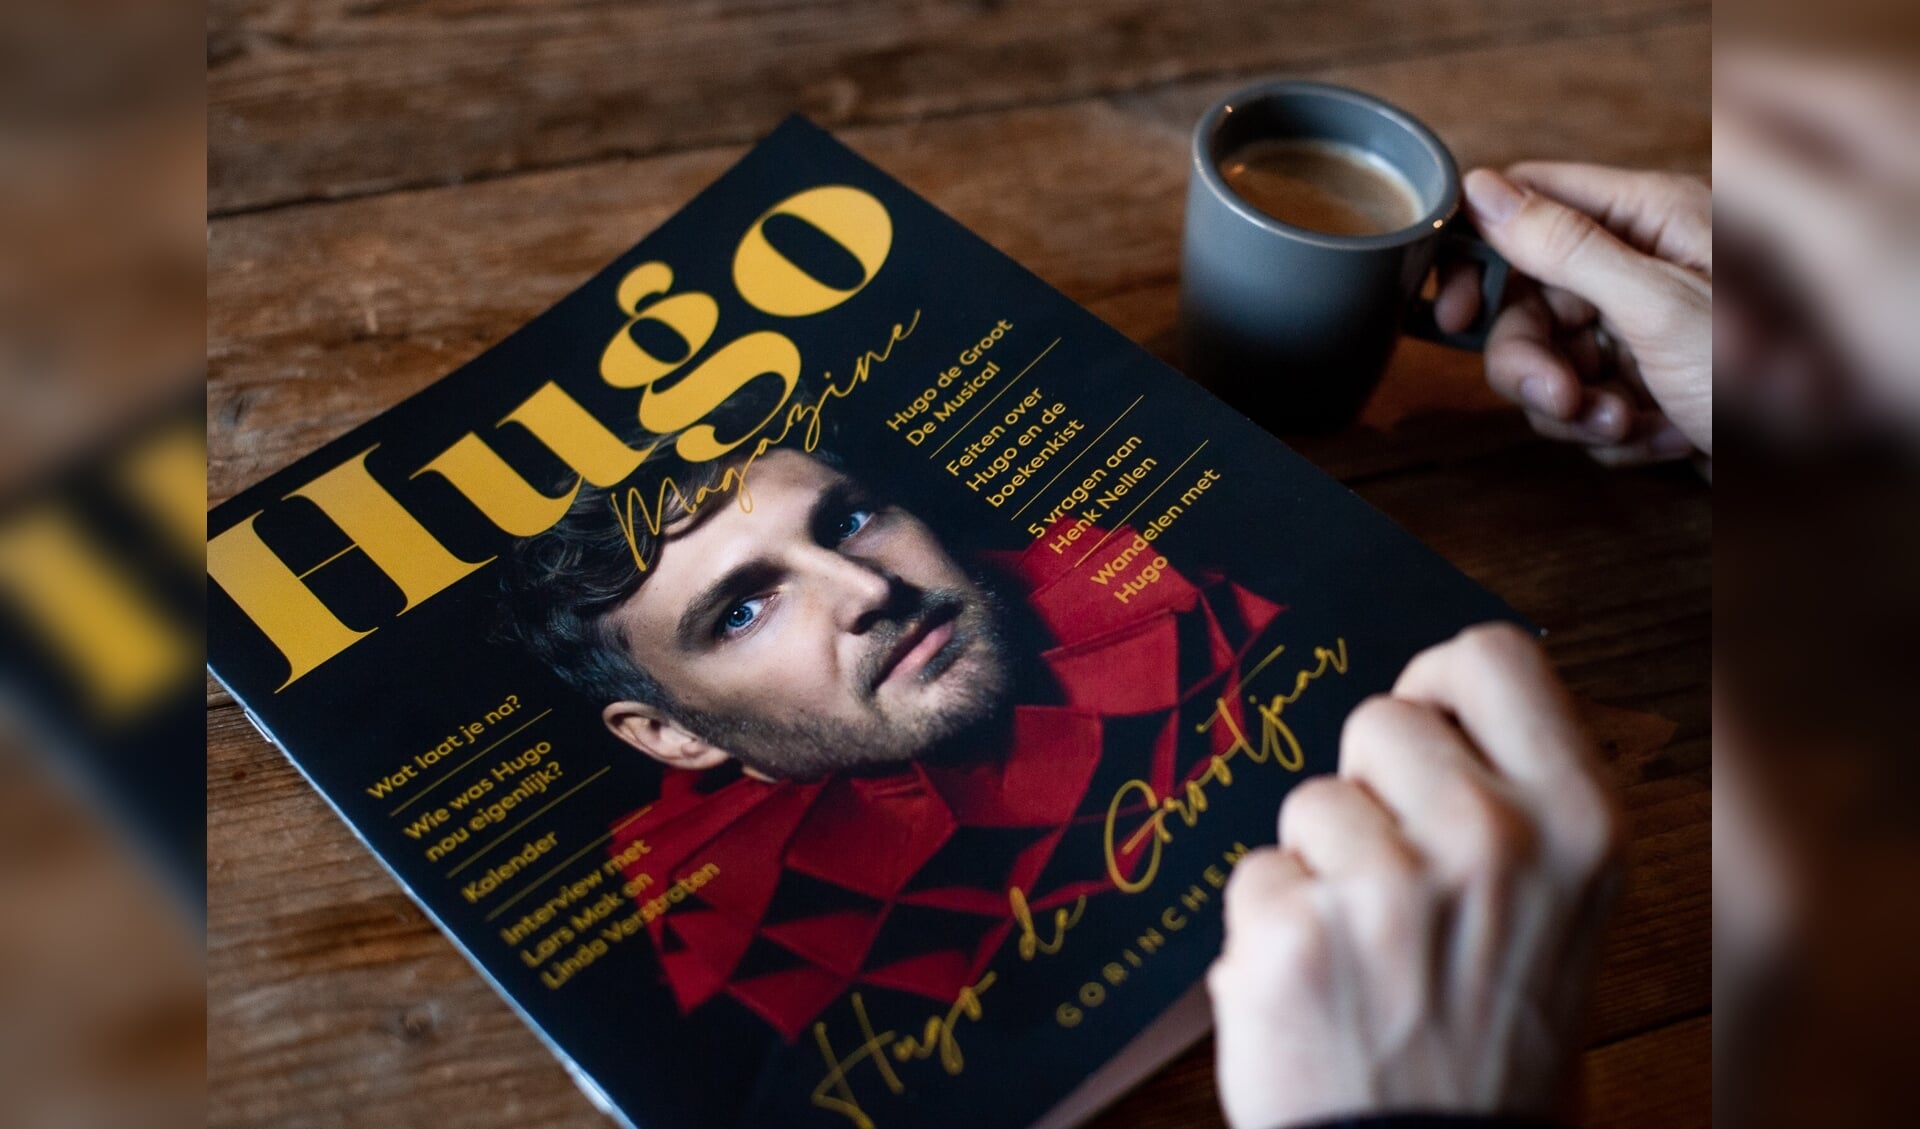 Het magazine Hugo wordt huis aan huis verspreid